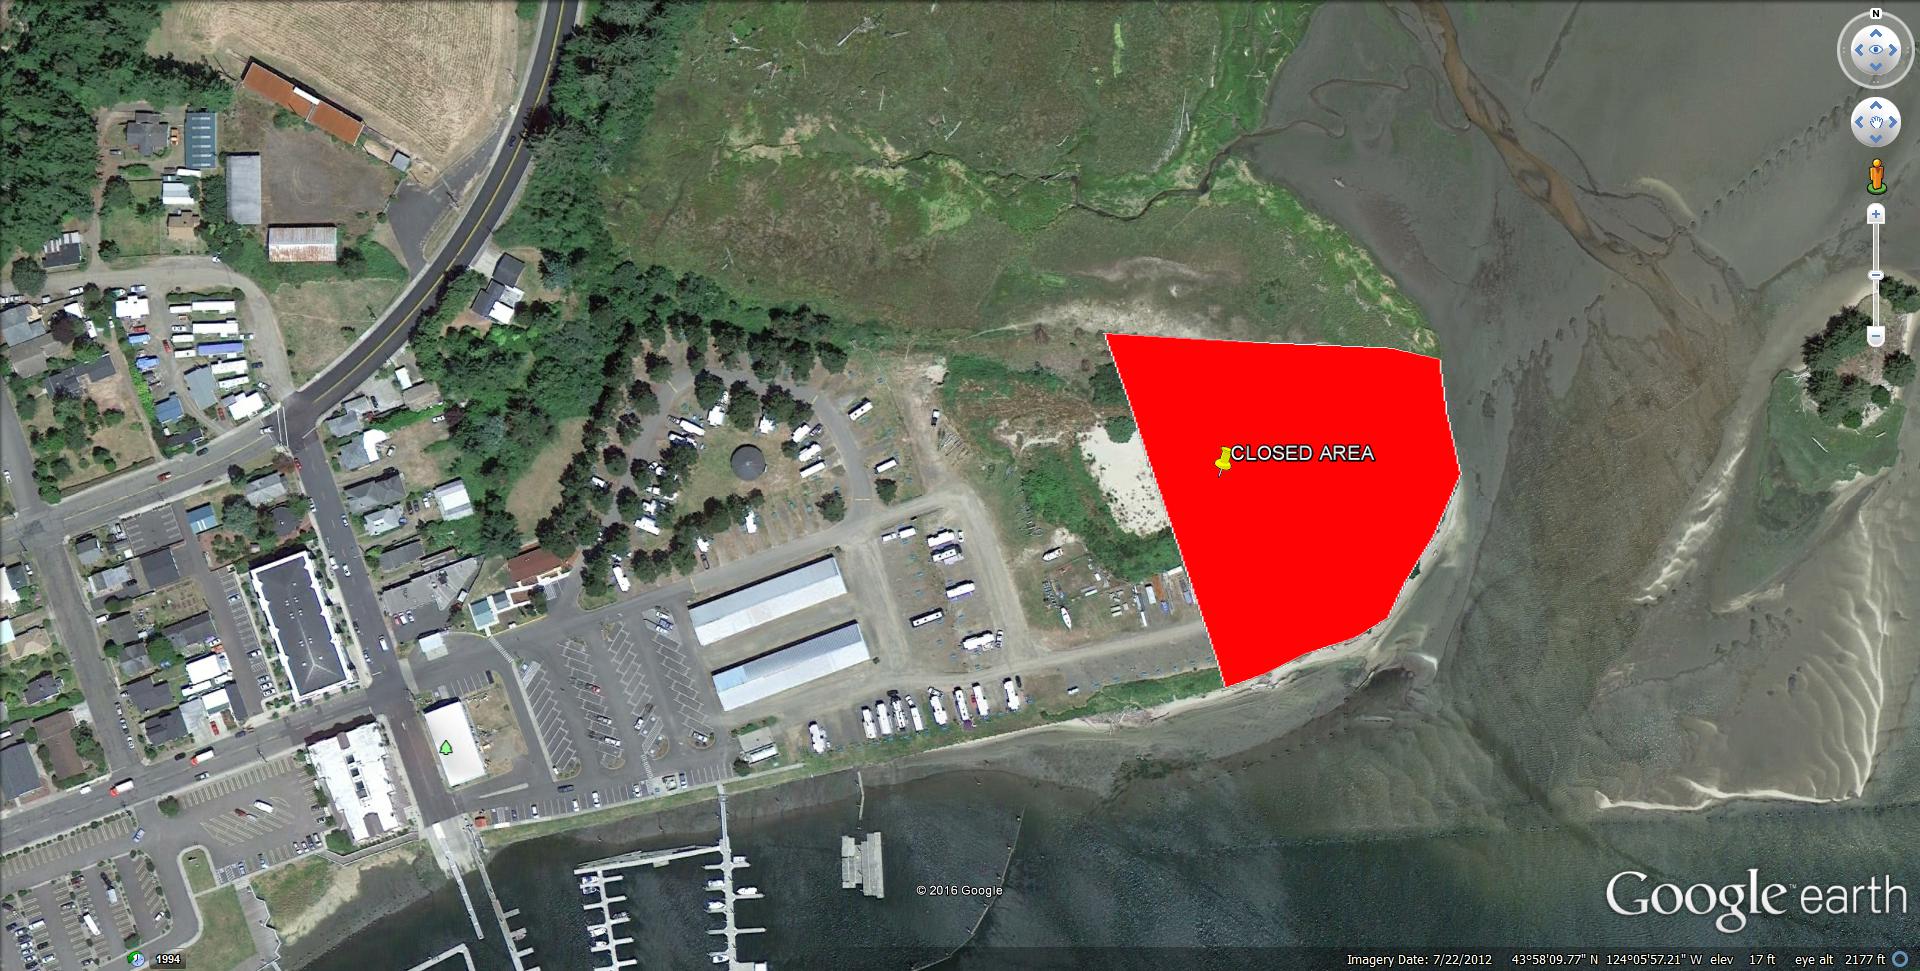 Port Closes East Property & C-Row Campsites